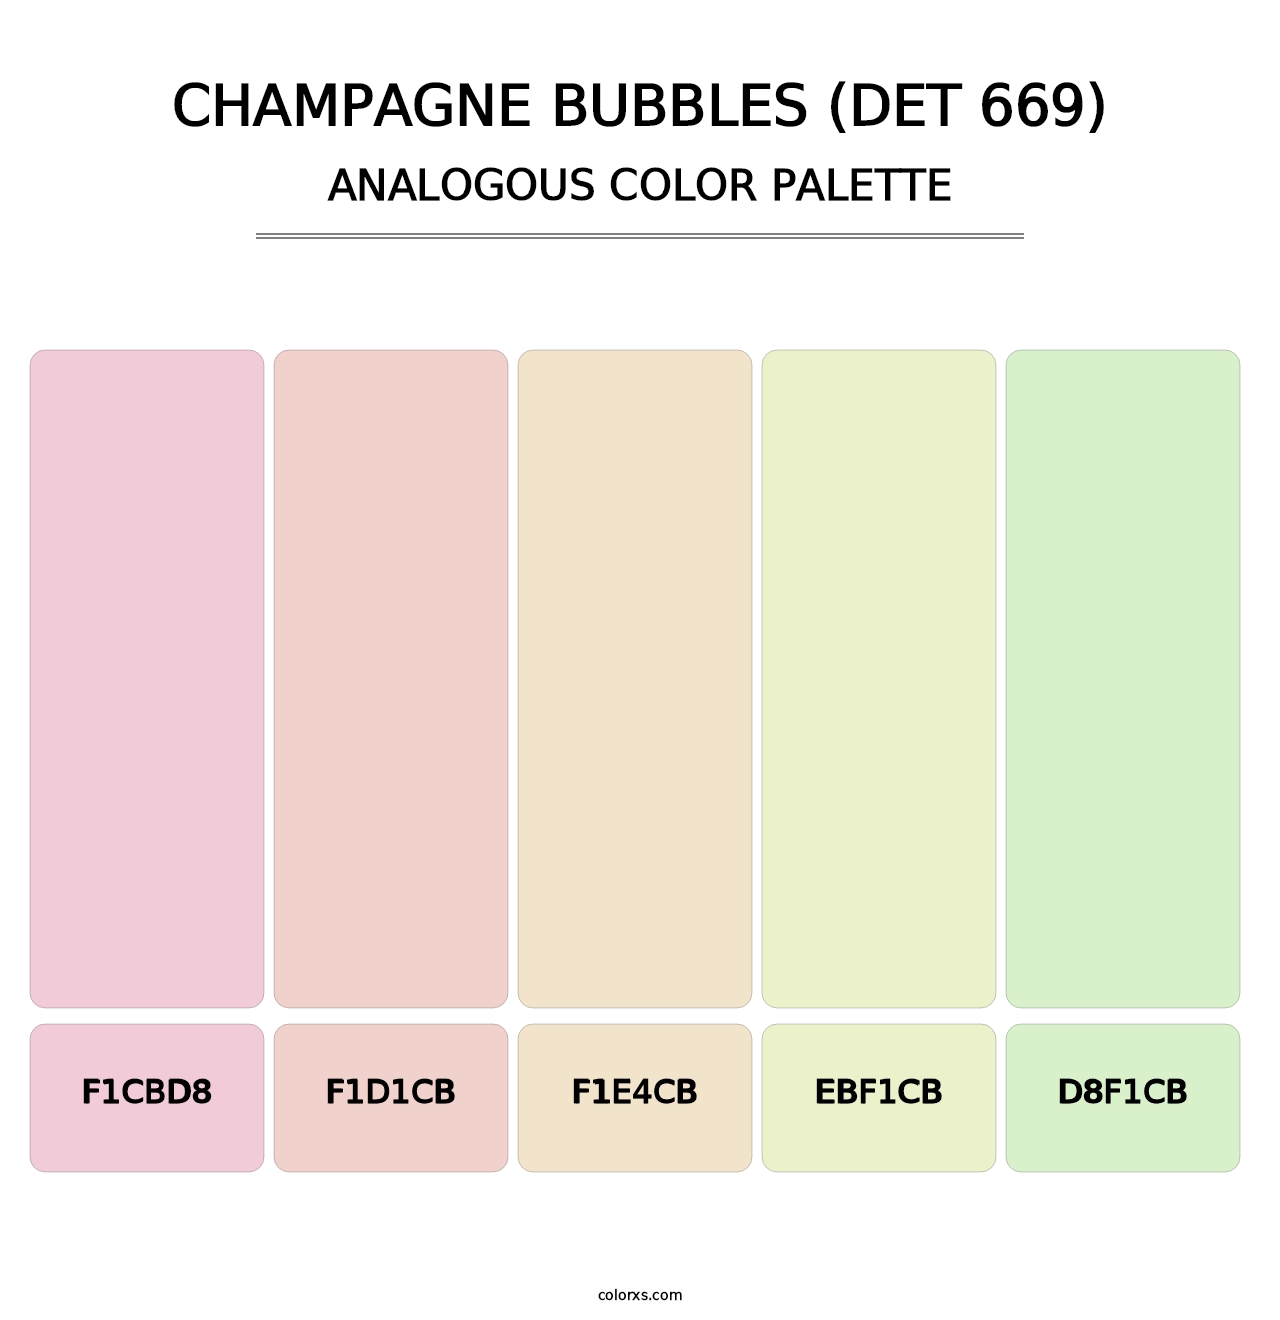 Champagne Bubbles (DET 669) - Analogous Color Palette